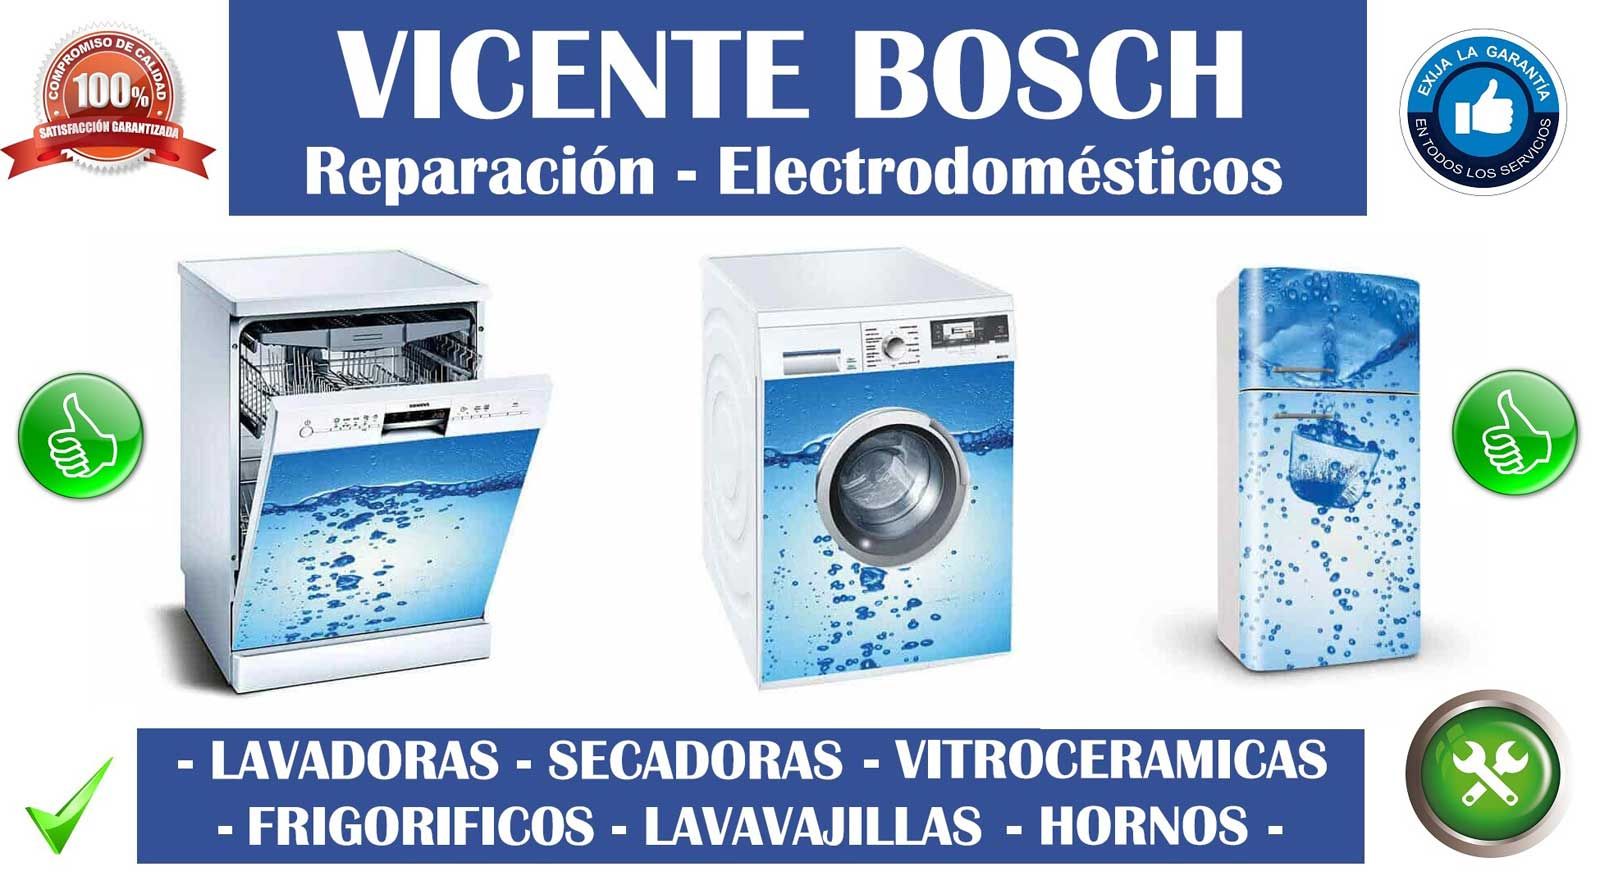 Reparaciones Vicente Bosch electrodomésticos 2